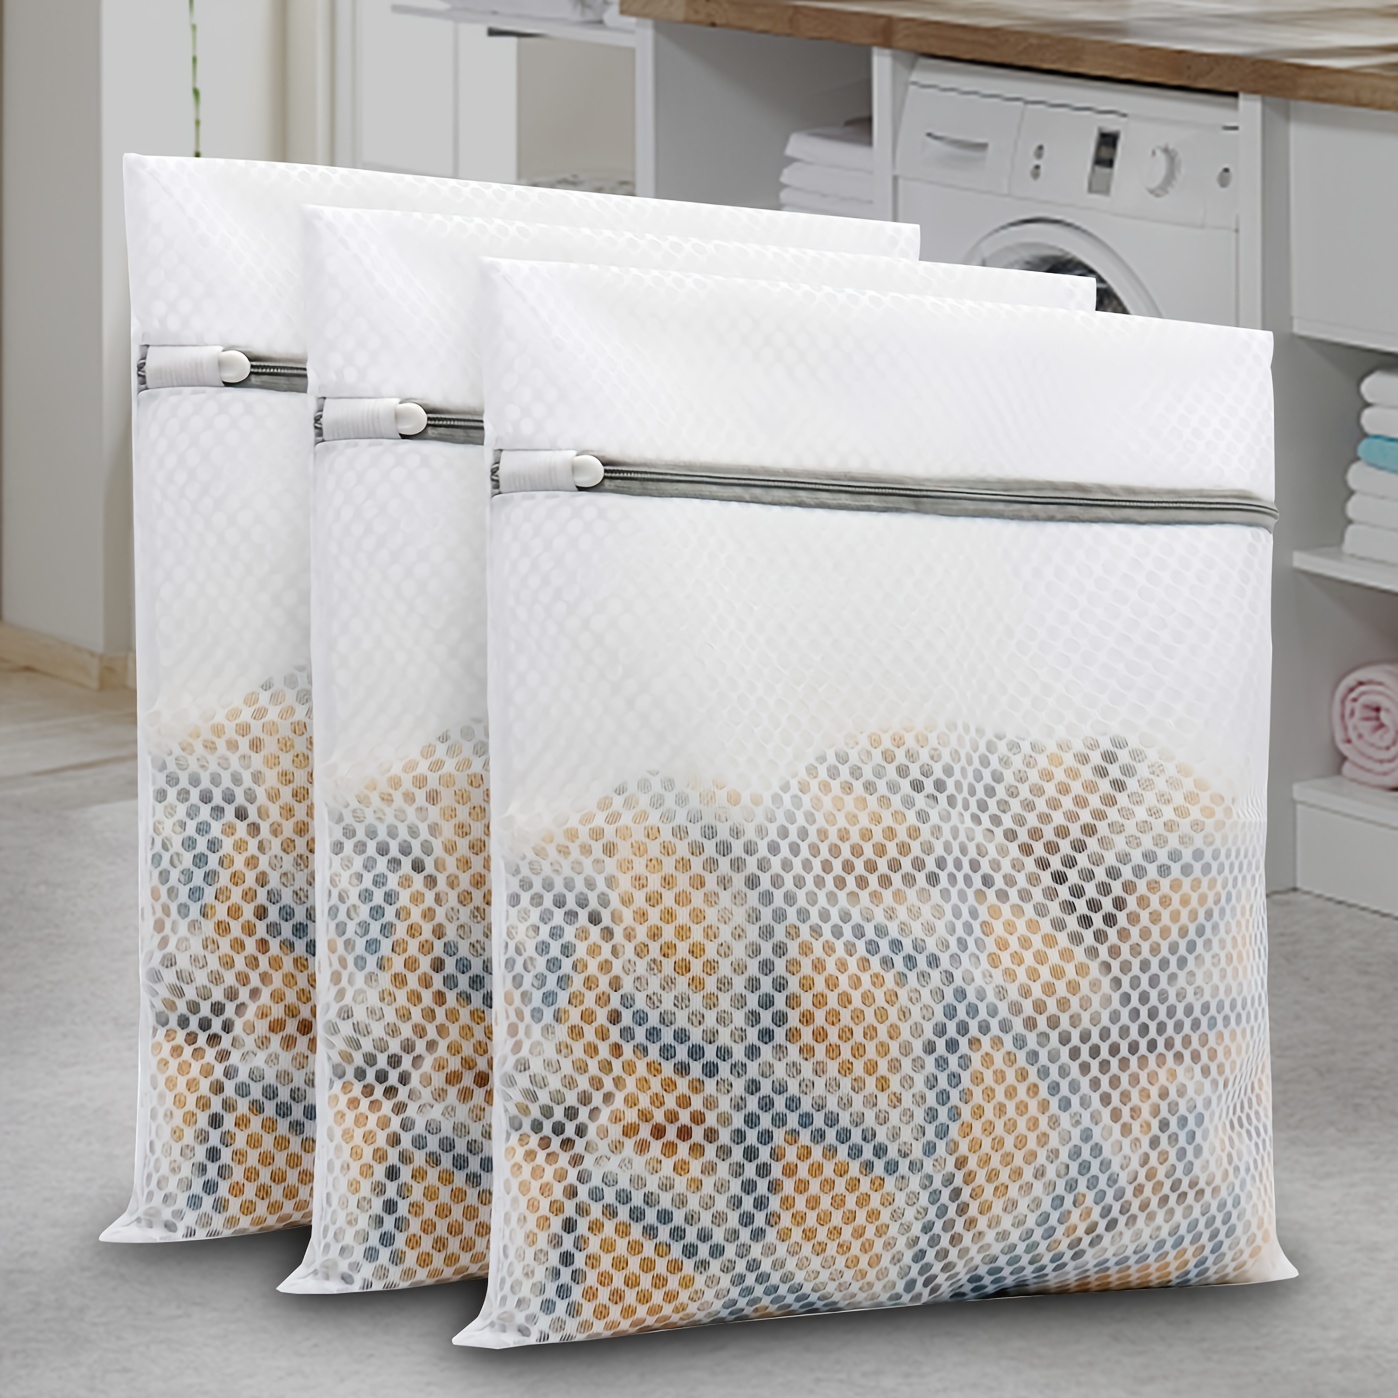 7 Pcs/set Mesh Laundry Bags for Washing Machine, Baytion Durable